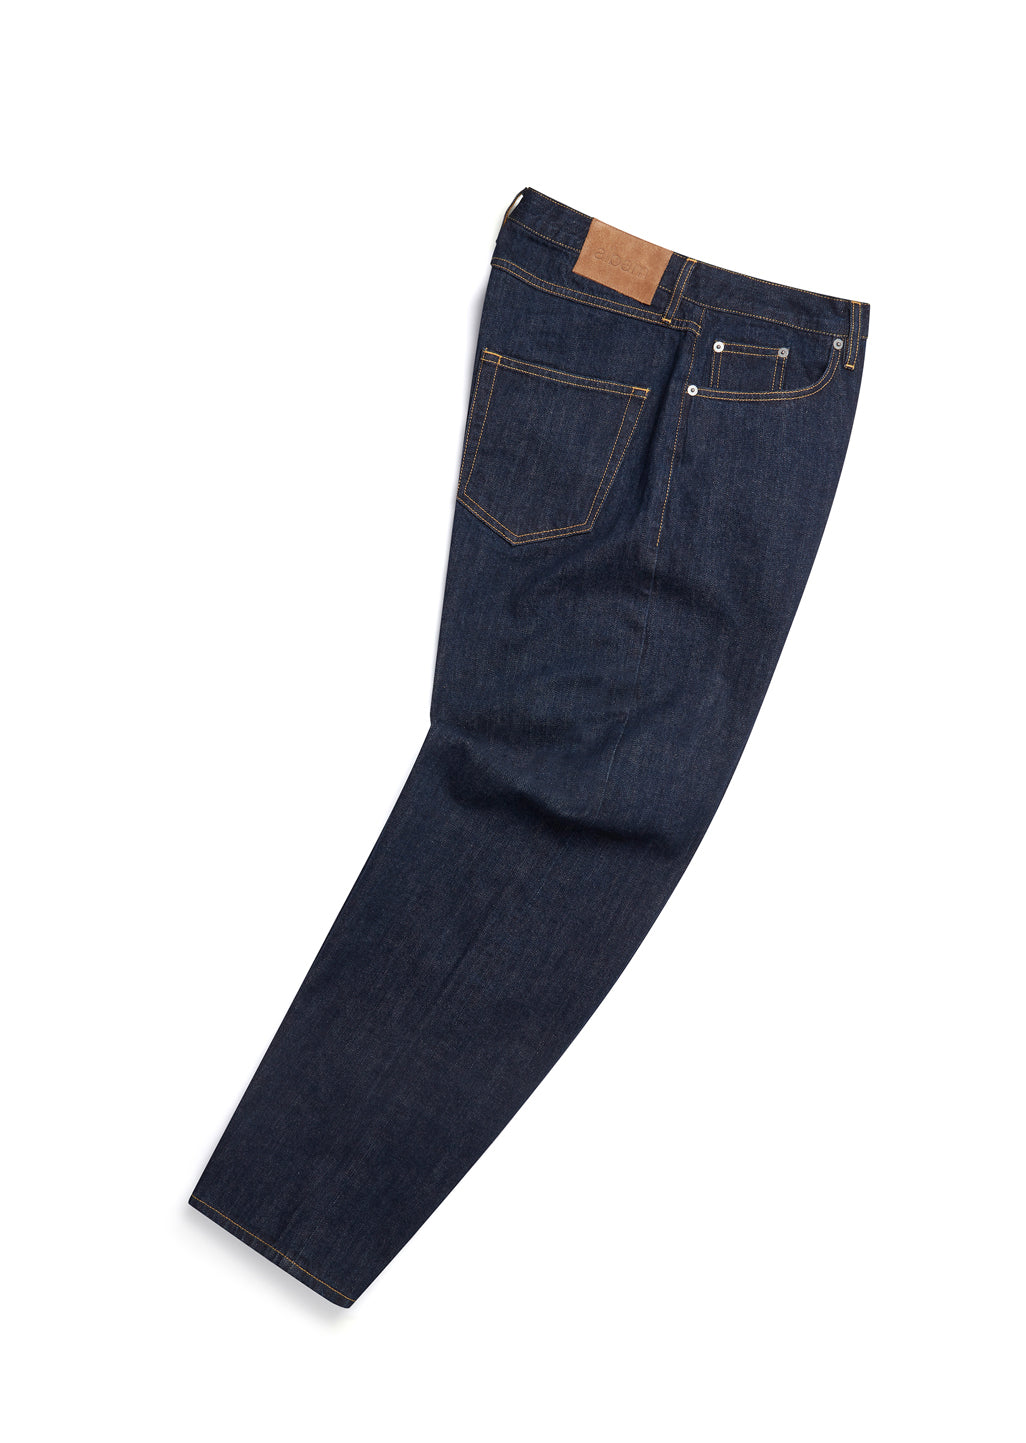 Japanese Denim Straight Leg Jean